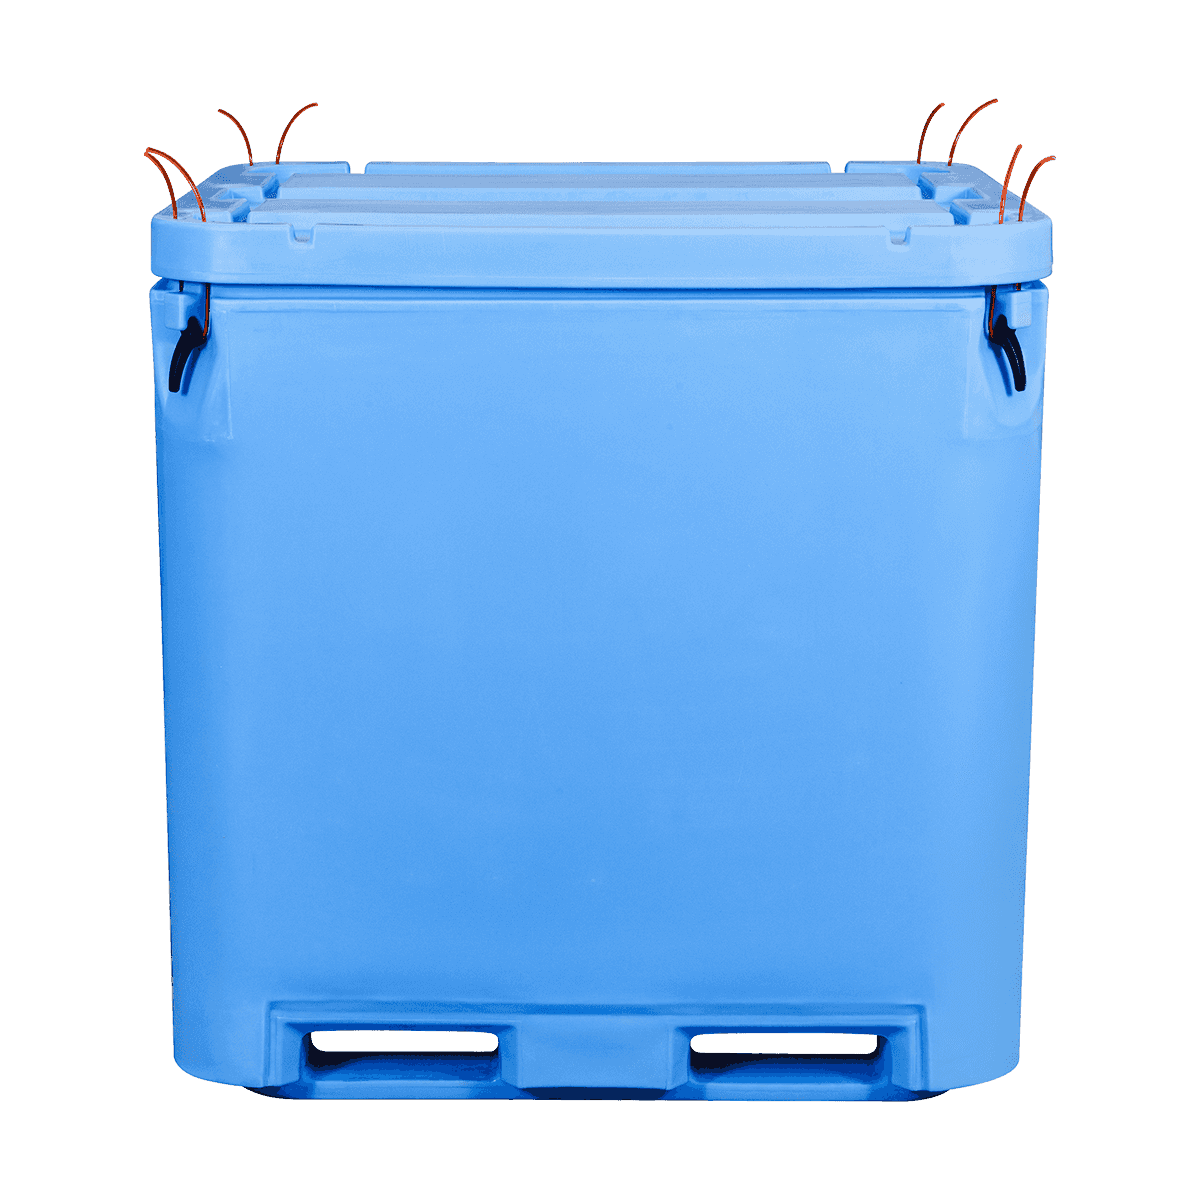 AF-1000L حاويات بلاستيكية معزولة للحوم / الدواجن للاستخدام الصناعي عبوات بلاستيكية